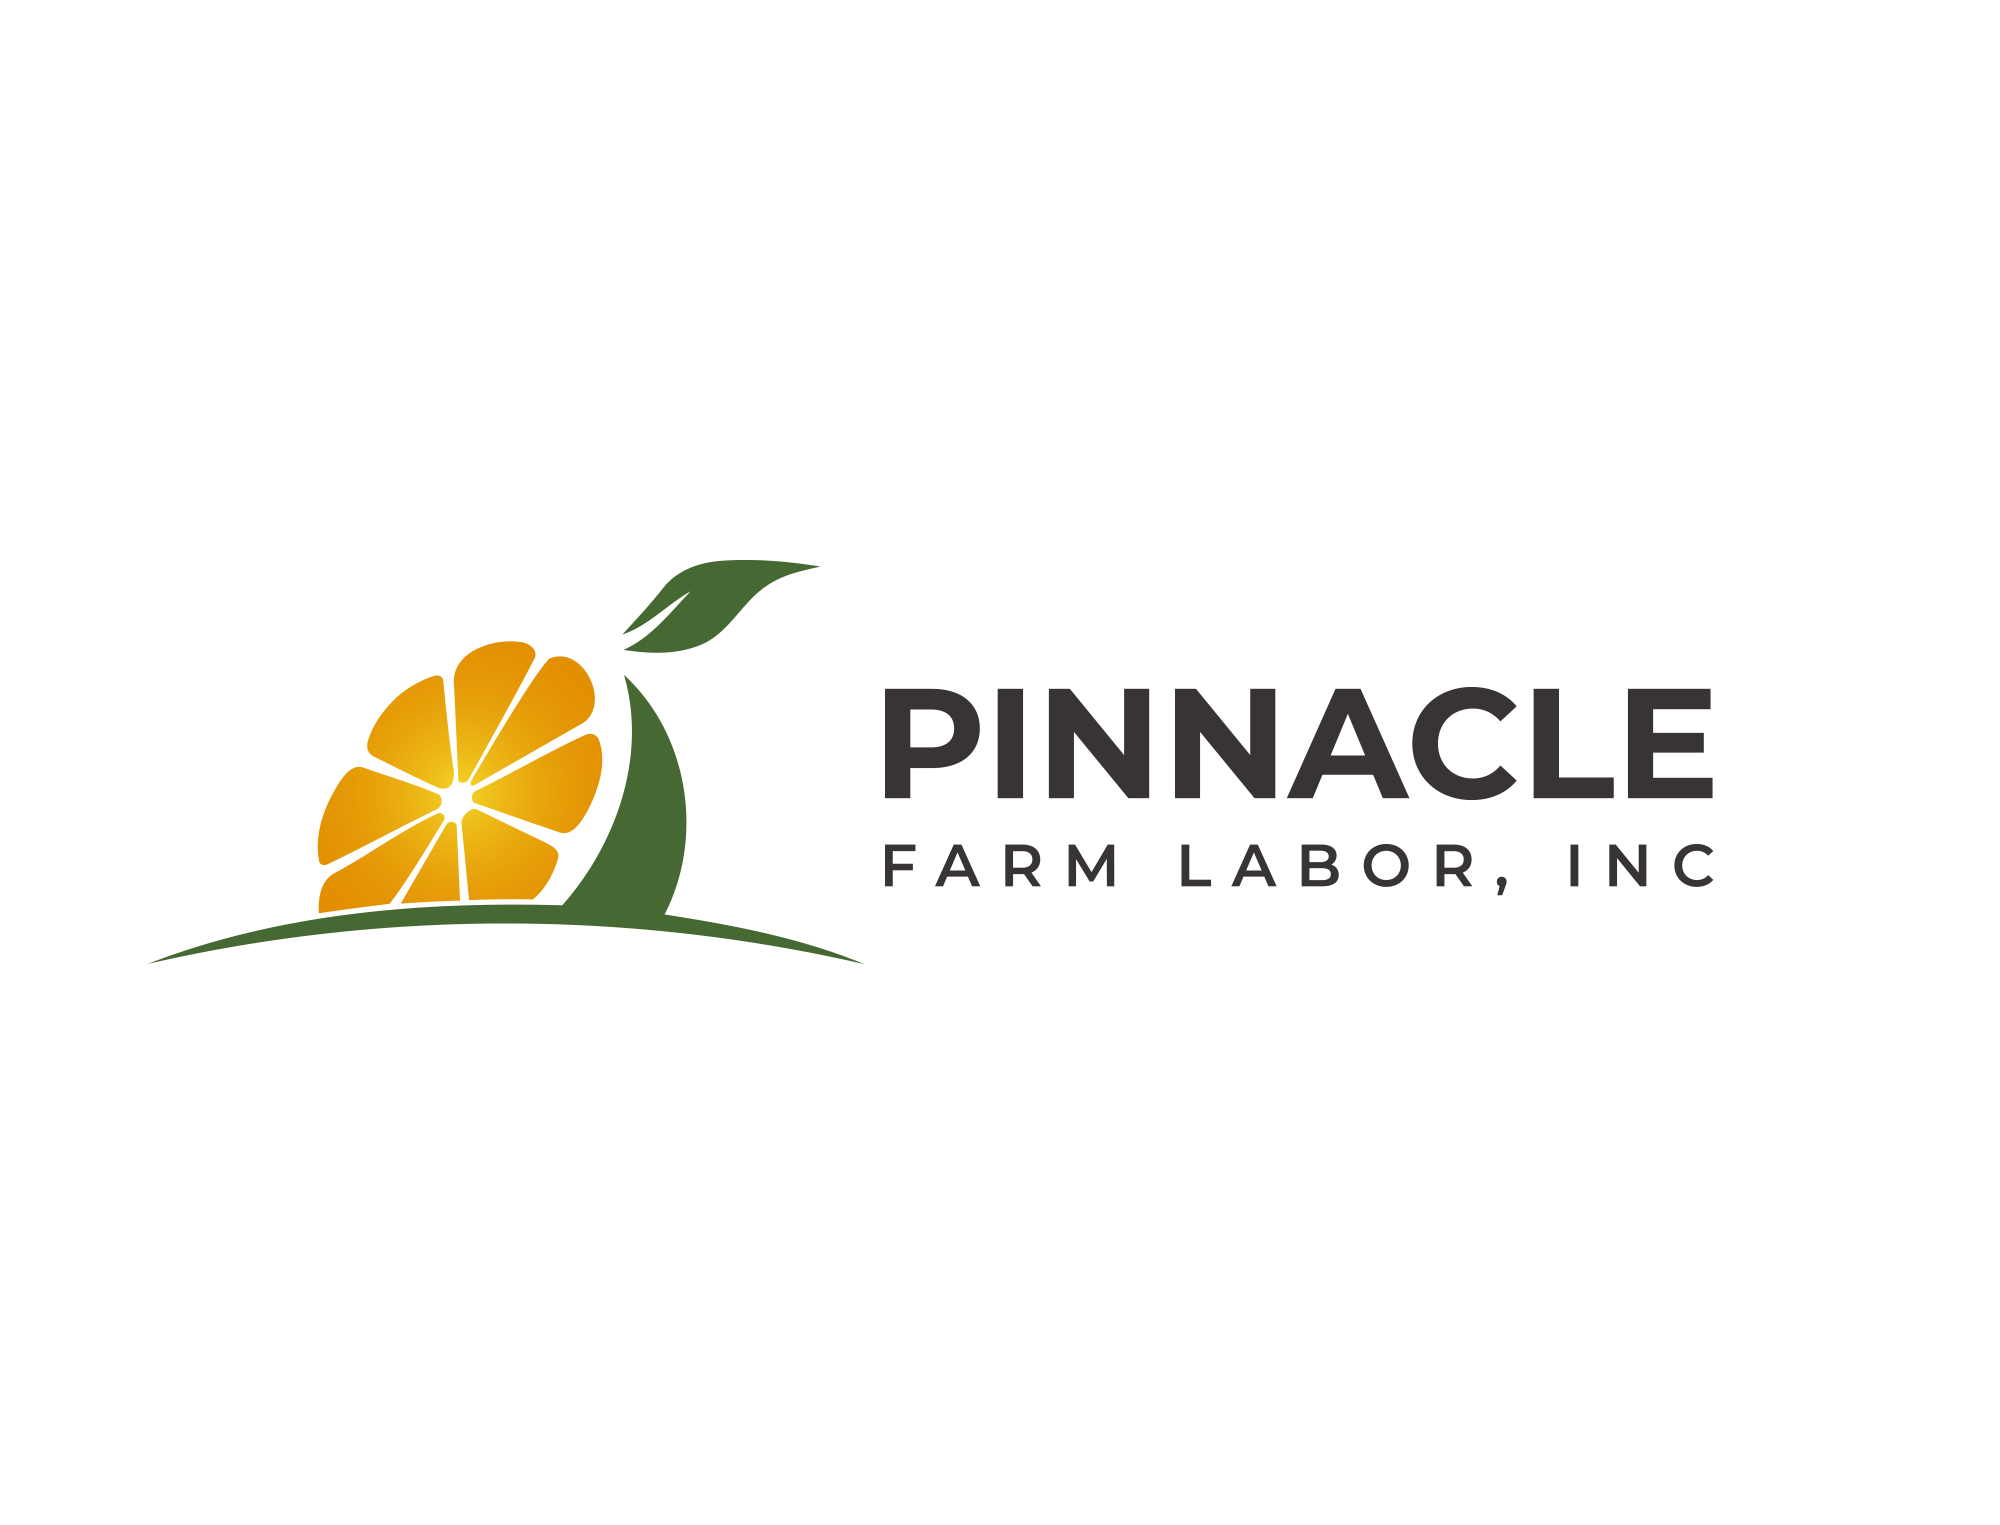 Pinnacle Farm Labor, Inc